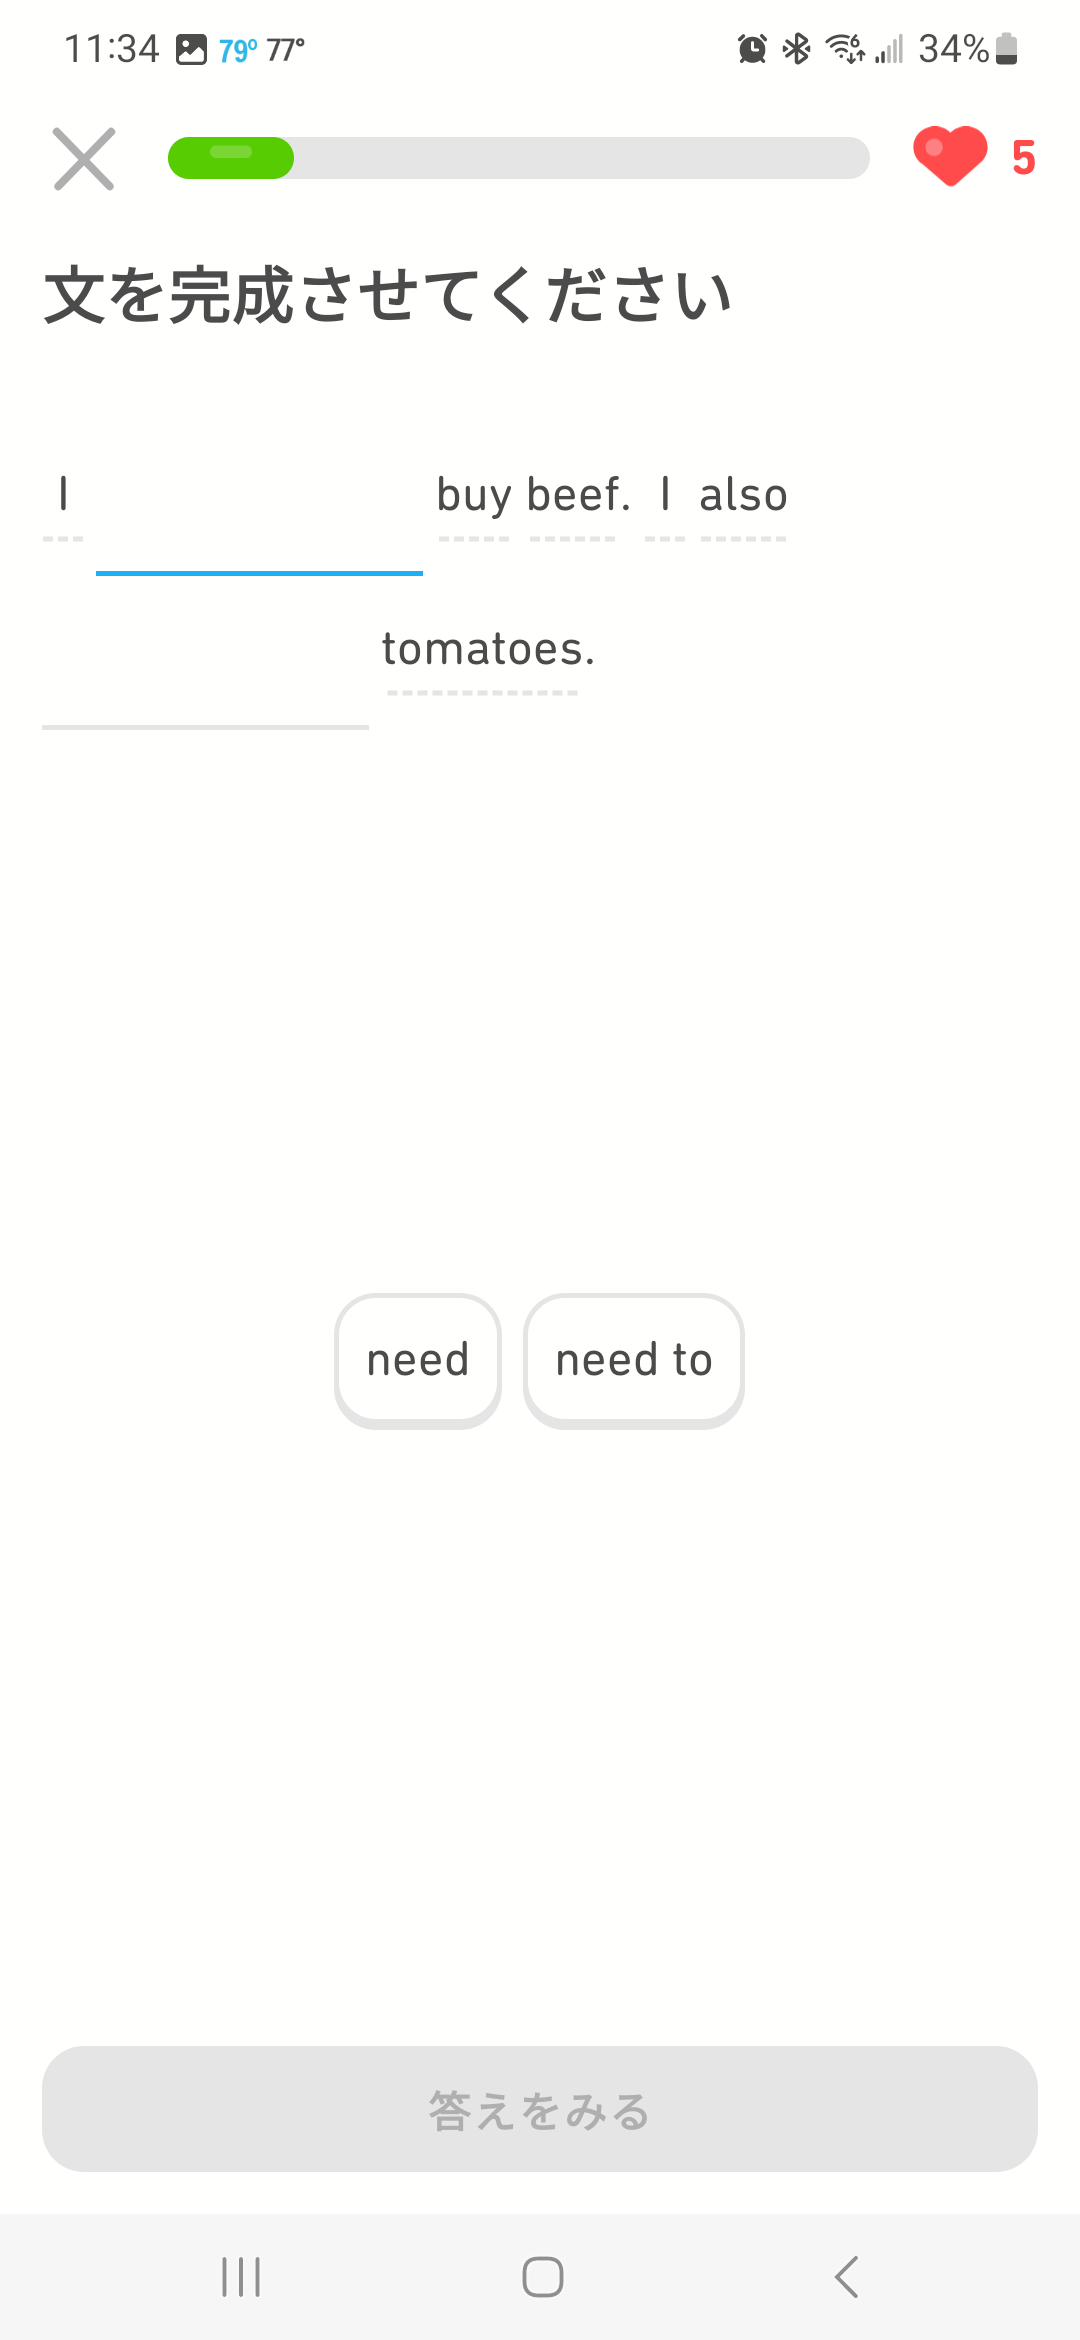 会話文空所補充問題の画像：「I 空欄 buy beef. I 空欄 tomatoes」という文章があり、その下には「need」と「need to」が表示されている。